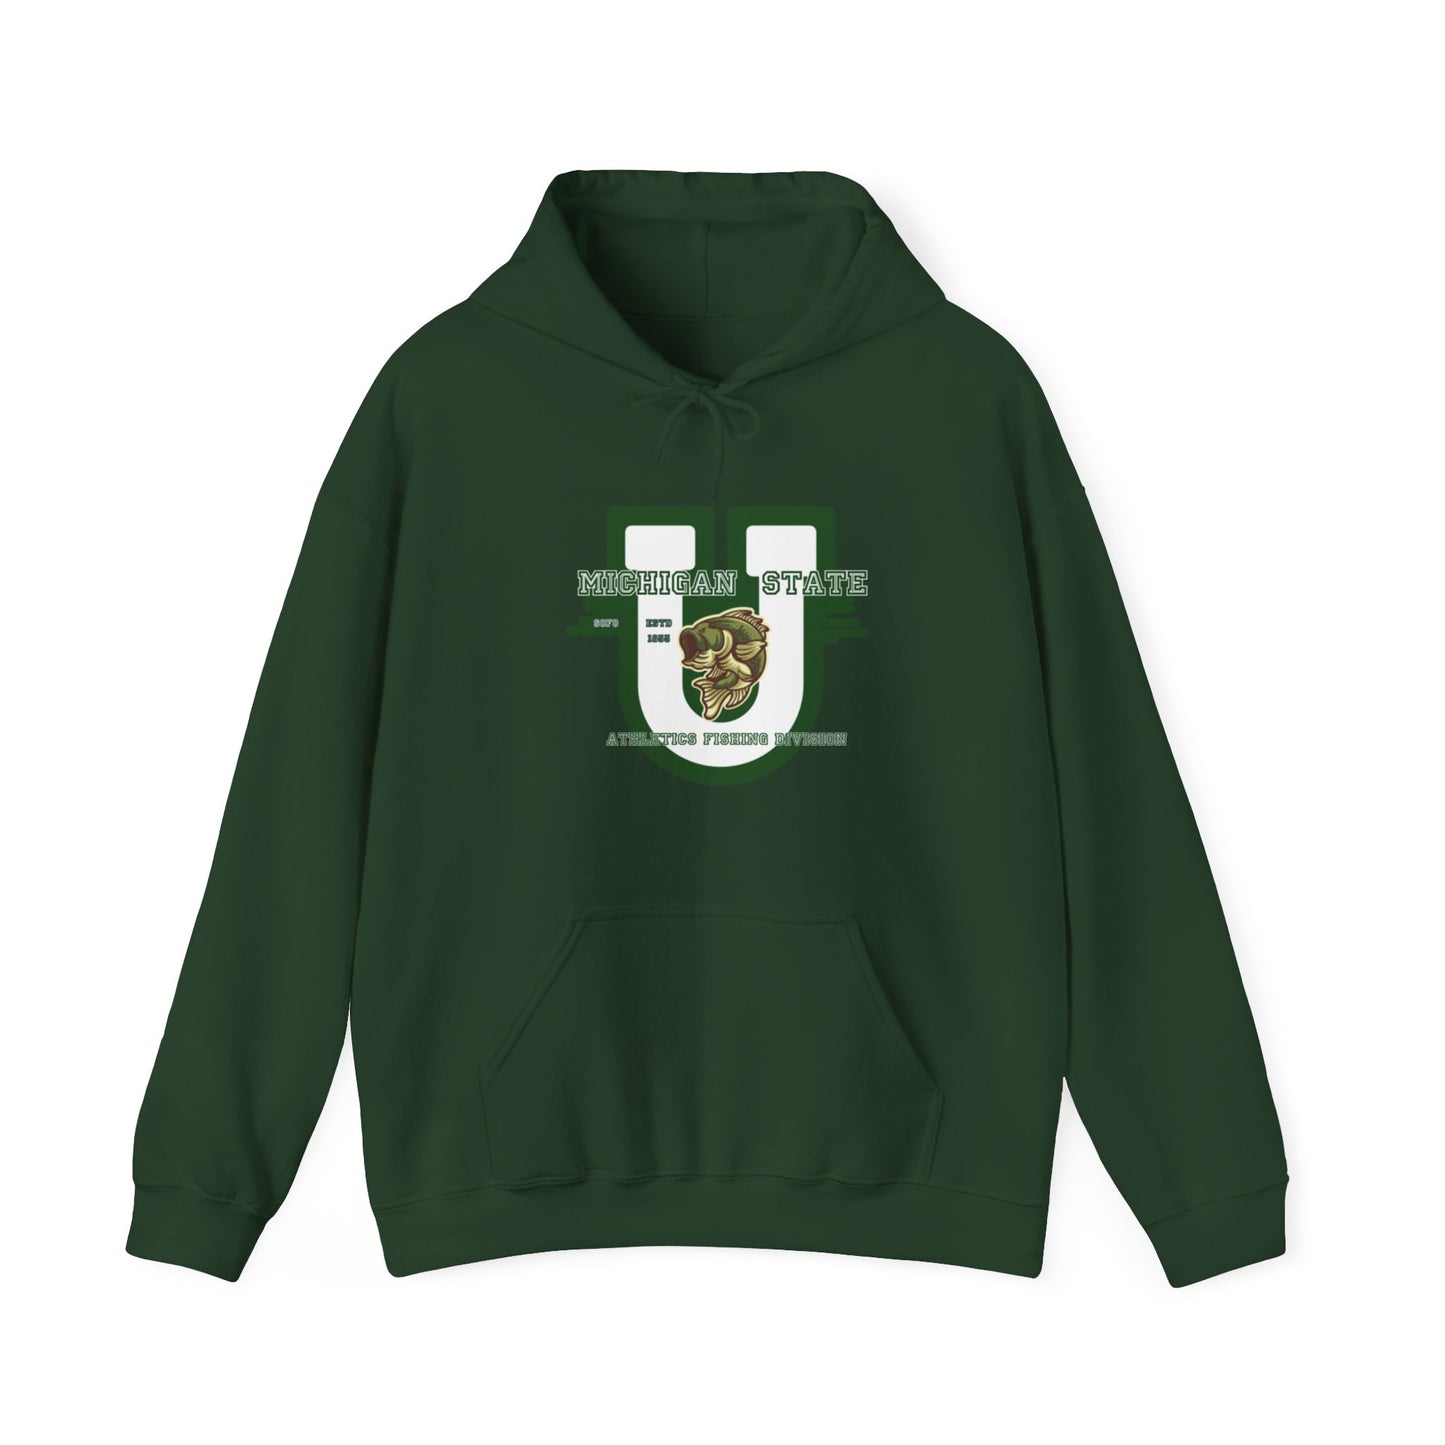 Michigan State Smallmouths The Big U Hooded Sweatshirt